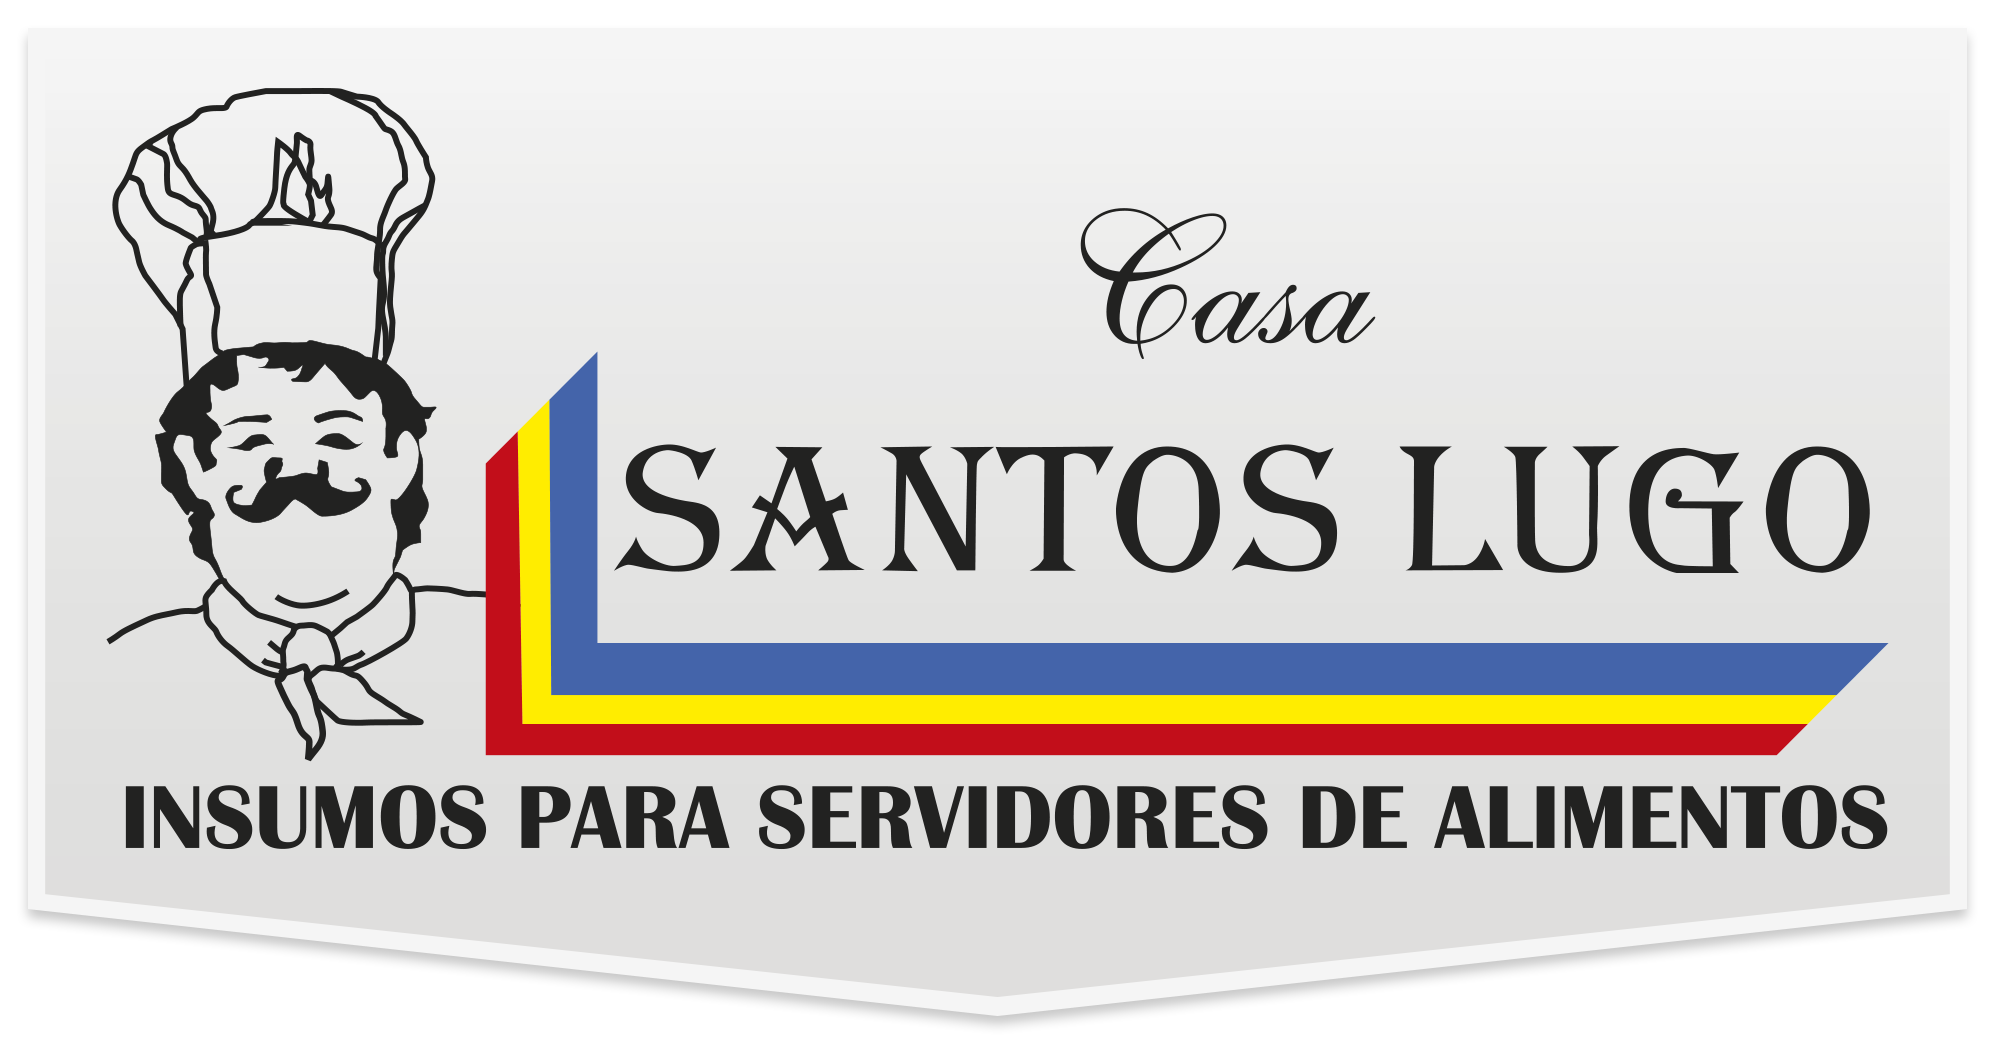 Santos Lugo | Categoría Productos para Negocio